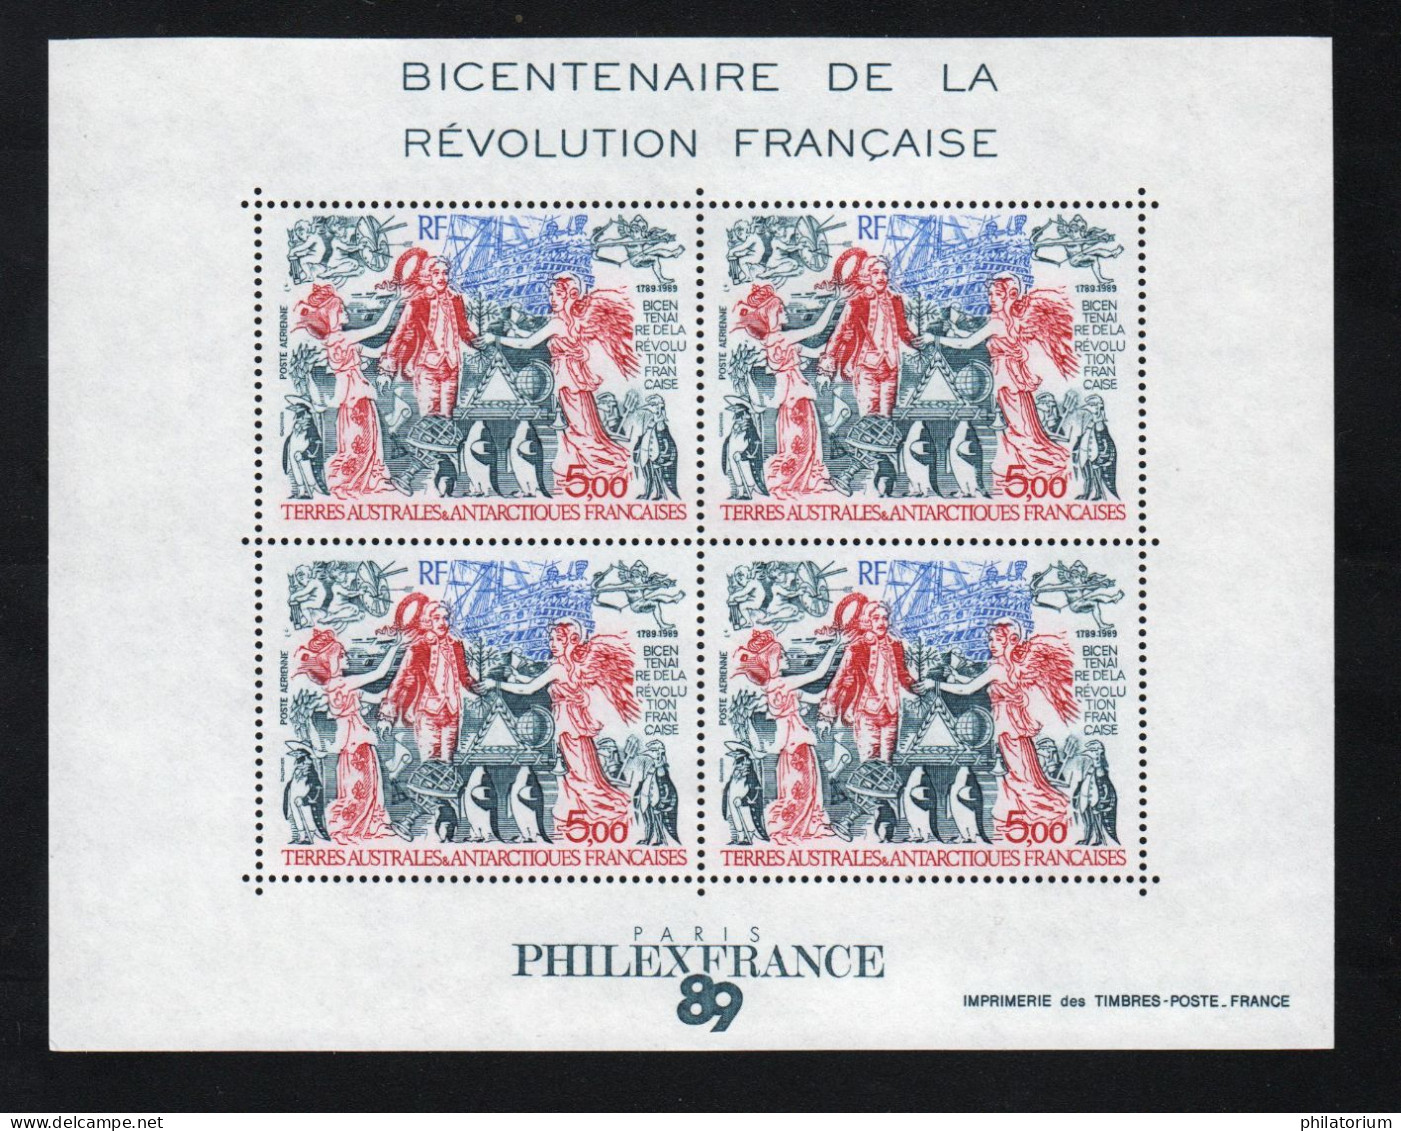 TAAF, **,  Yv BF 1, Mi BL 1, SG MS 257, Bicentenaire De La Révolution Française, - Blocks & Kleinbögen